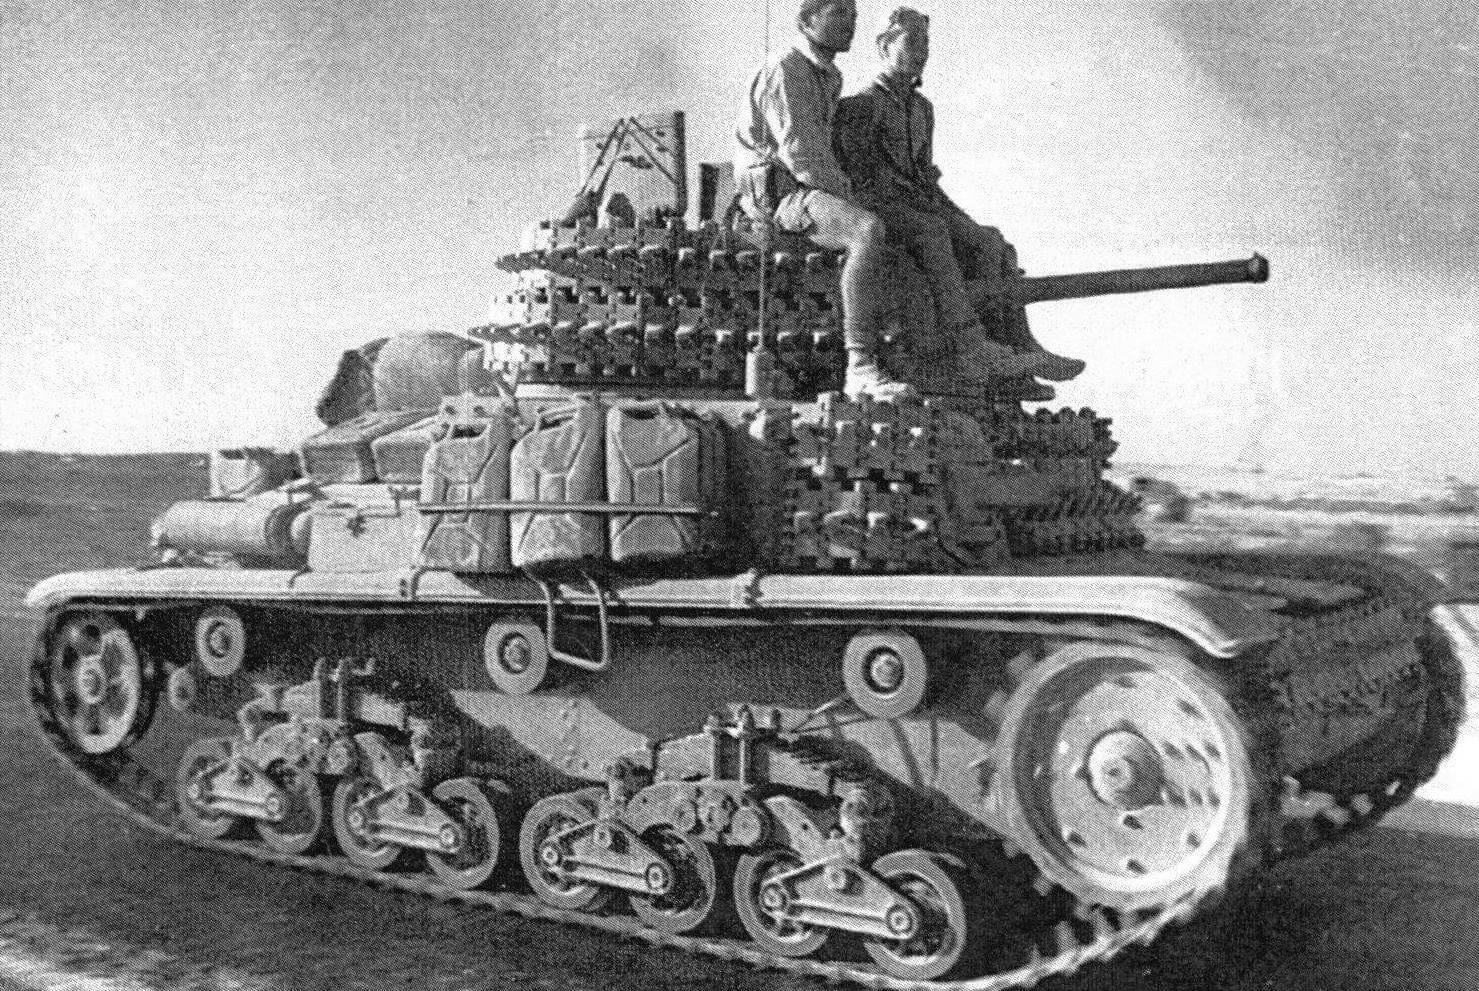 Танк М14/41 из состава танковой дивизии Centauro движется к линии фронта. Северная Африка, 1942 год. В качестве дополнительной защиты на этой машине используются гусеничные траки